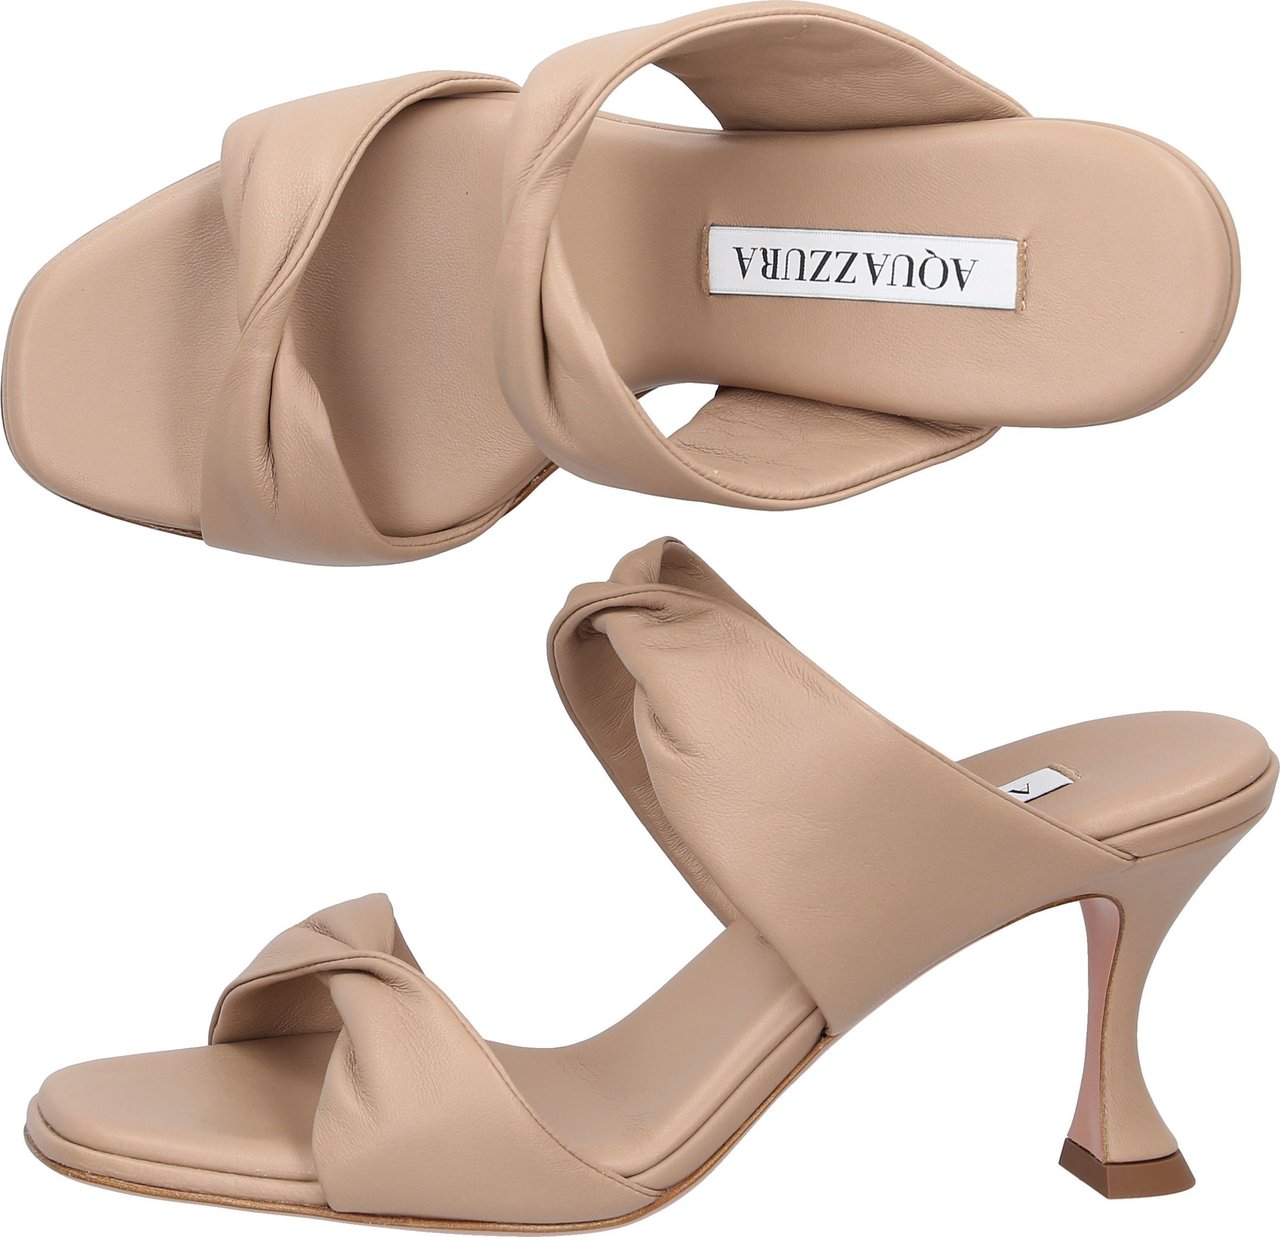 Aquazzura Sandals Twist Nappa Leather Enrica Bruin